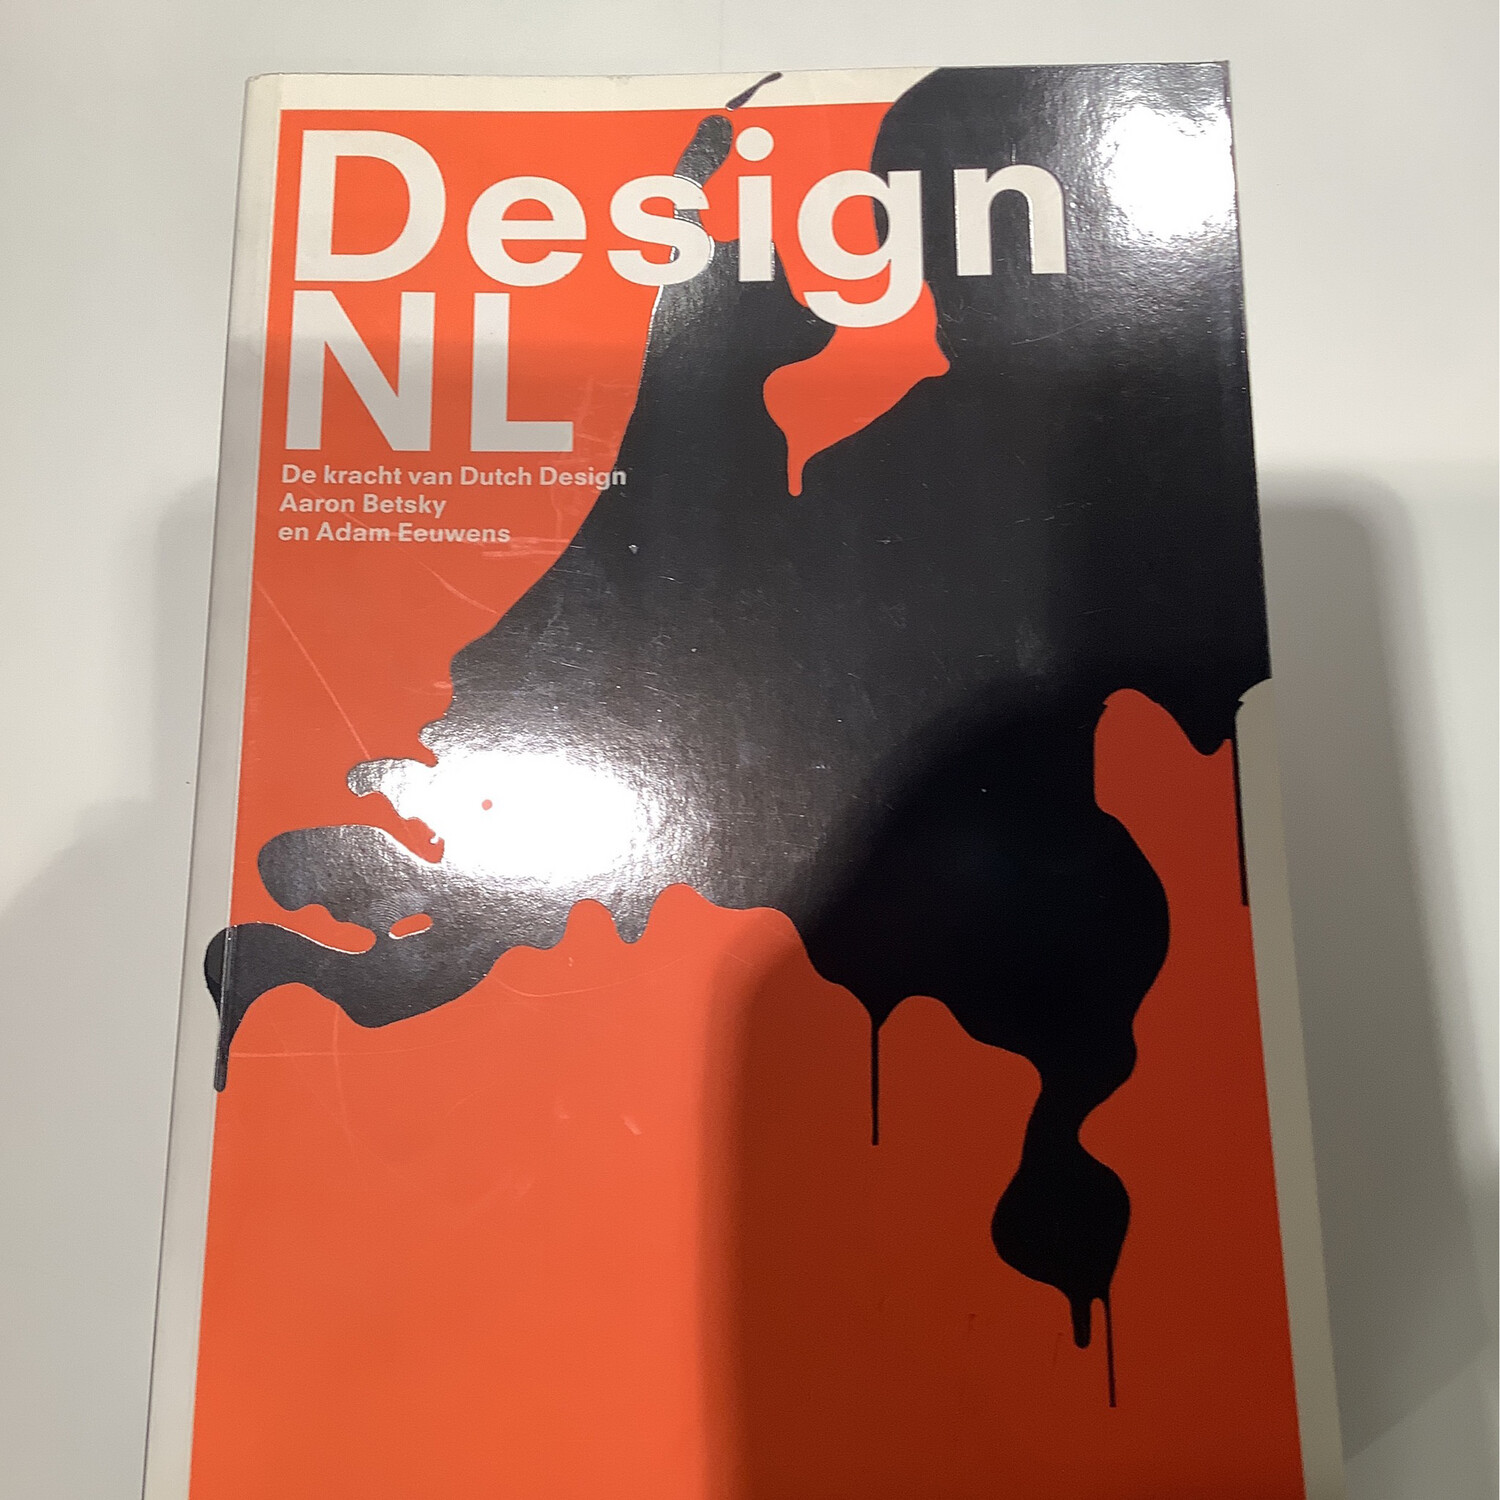 Design NL